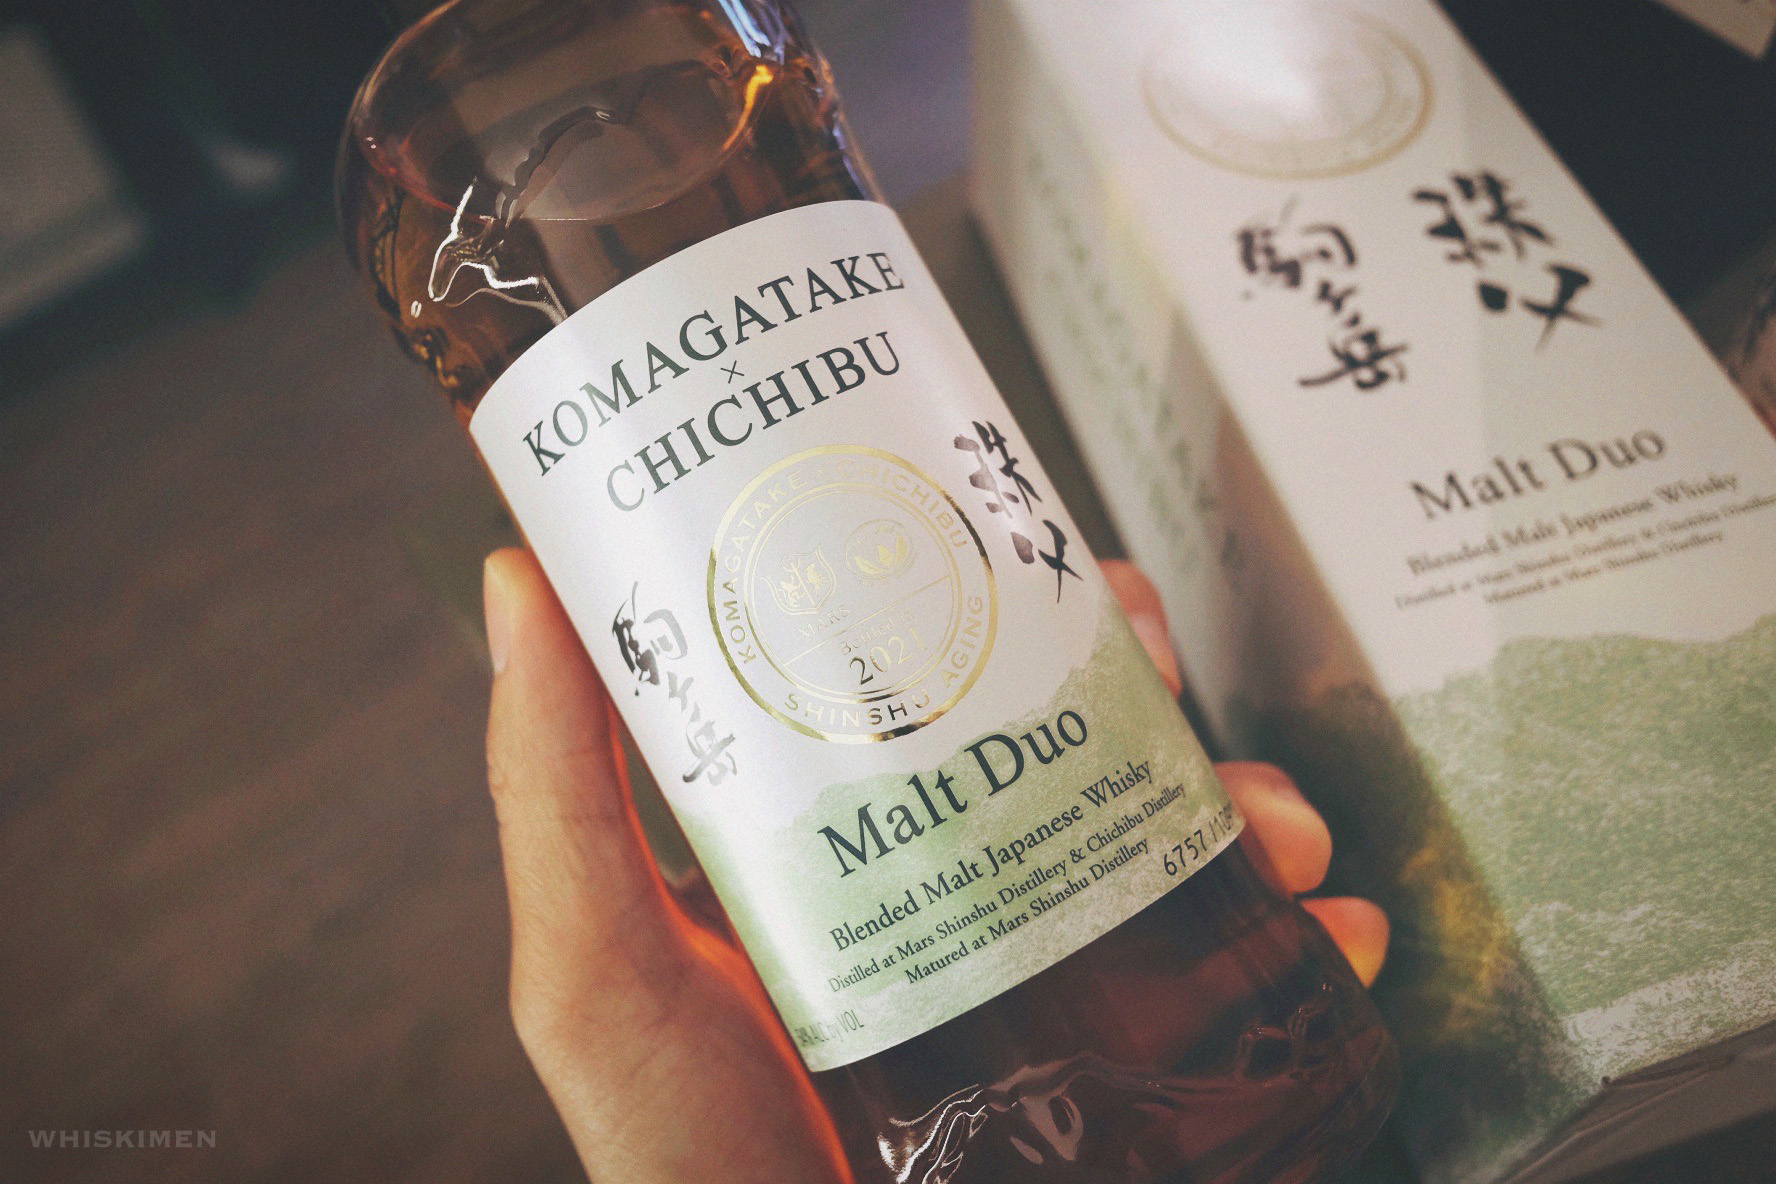 駒ヶ岳 Mars Komagatake × 秩父 Chichibu Malt Duo 2021 Blended Malt Japanese Whisky